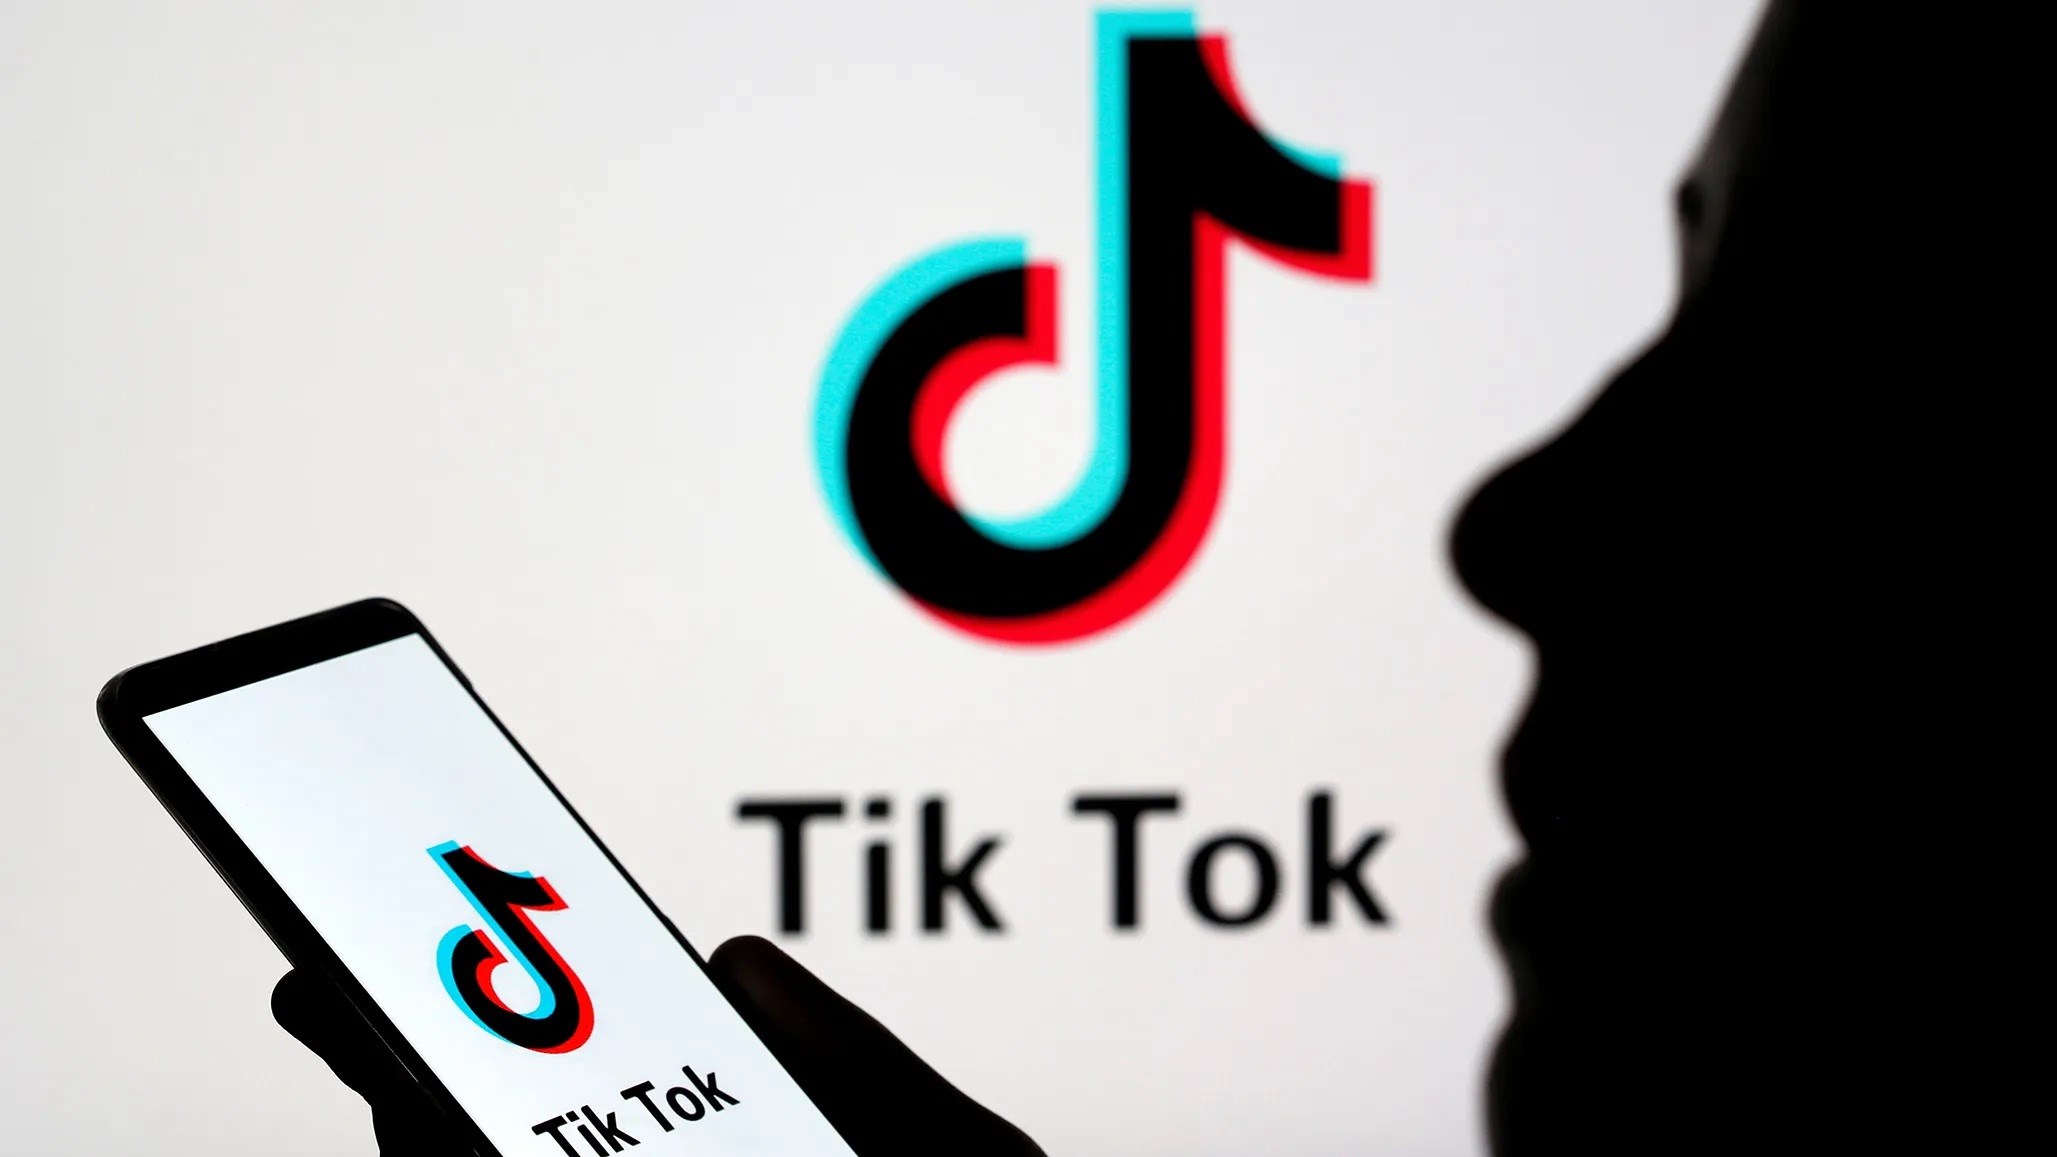 TikTok'a gayriahlaki içerikler nedeniyle daraltma cezası yolda